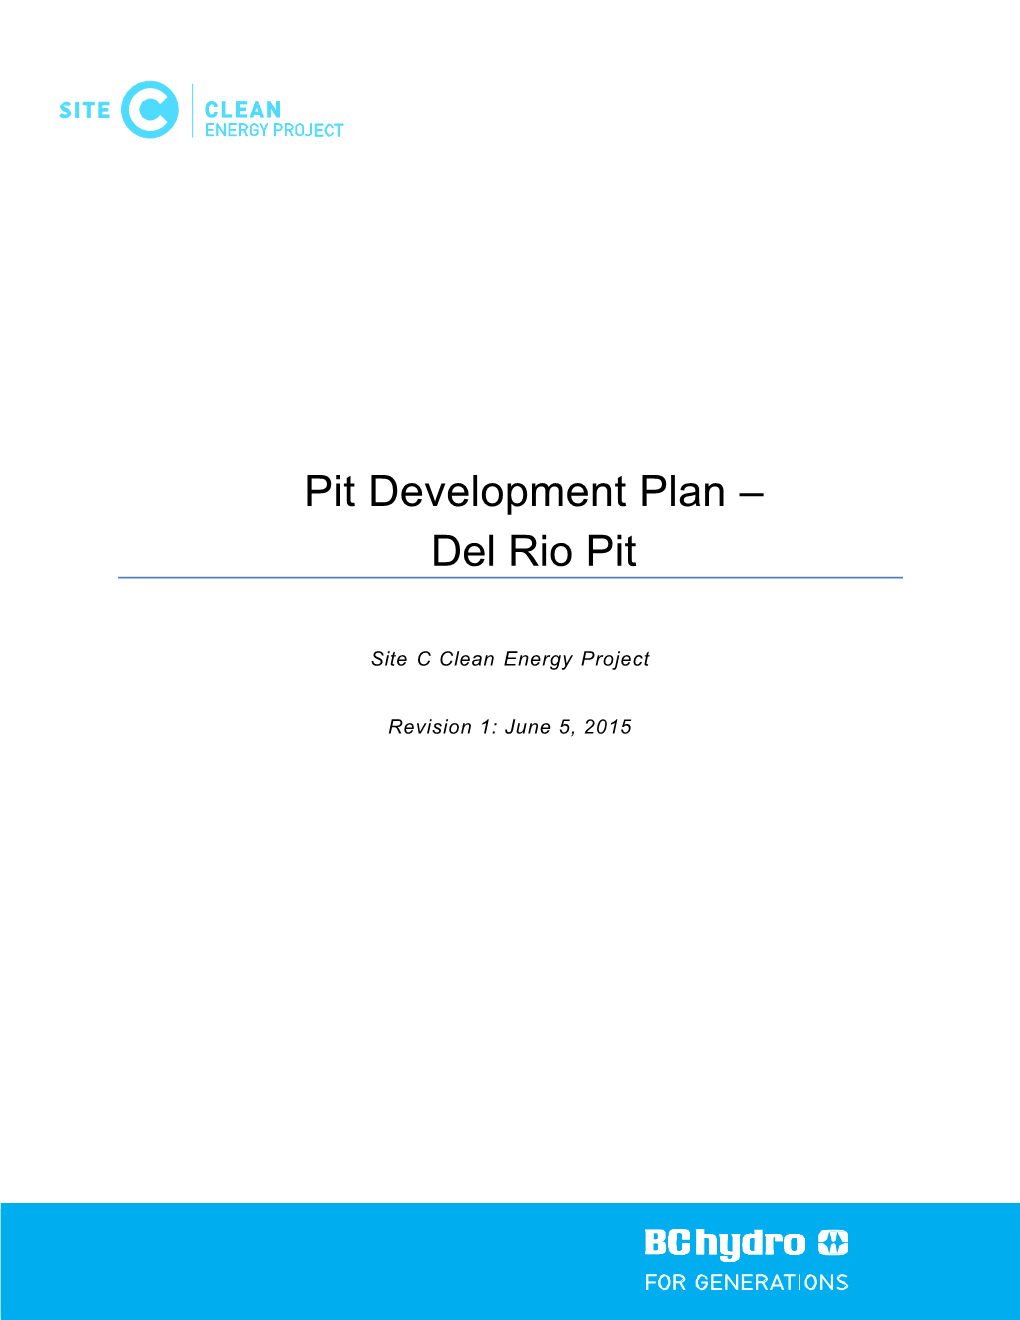 Del Rio Pit Development Plan; • Impervious Core Materials Source Development Plan; • Portage Mountain Quarry Development Plan; and • Wuthrich Quarry Development Plan